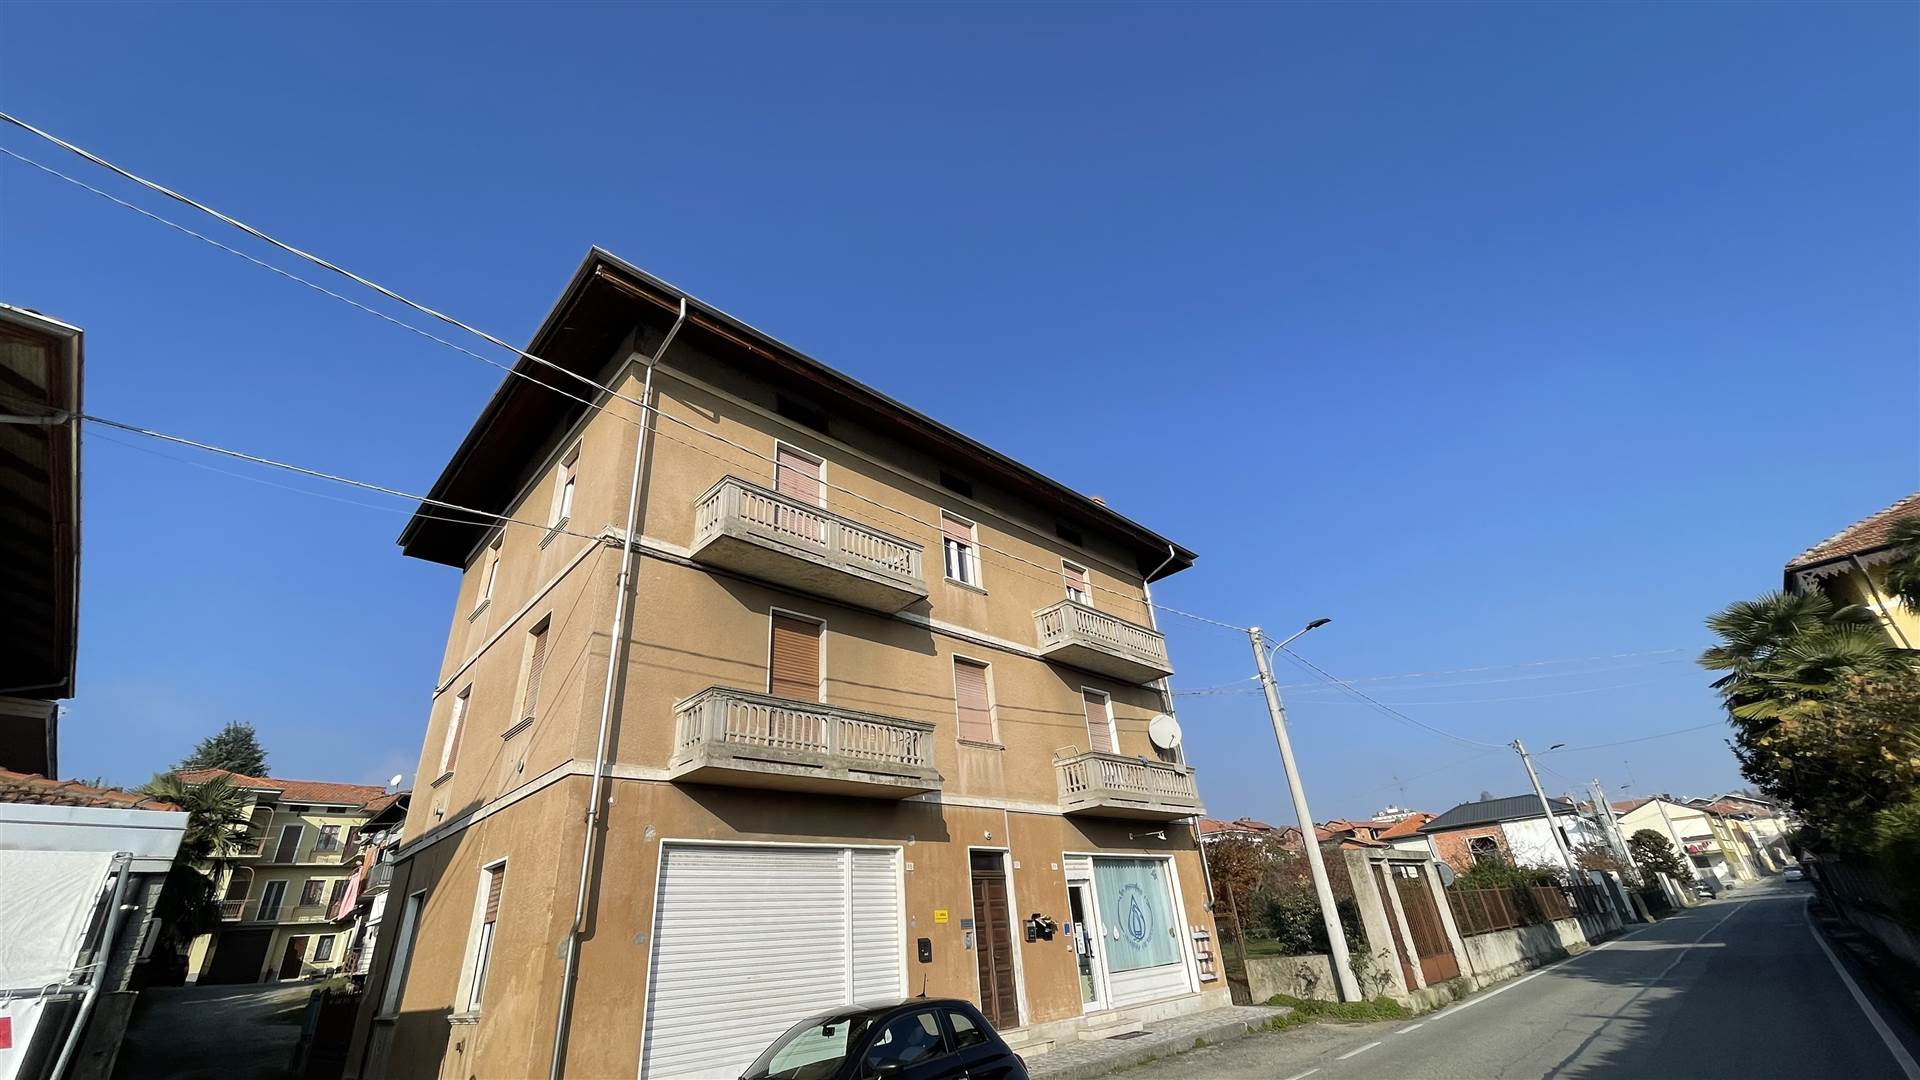 Appartamento in vendita a Cossato, 3 locali, prezzo € 37.000 | PortaleAgenzieImmobiliari.it